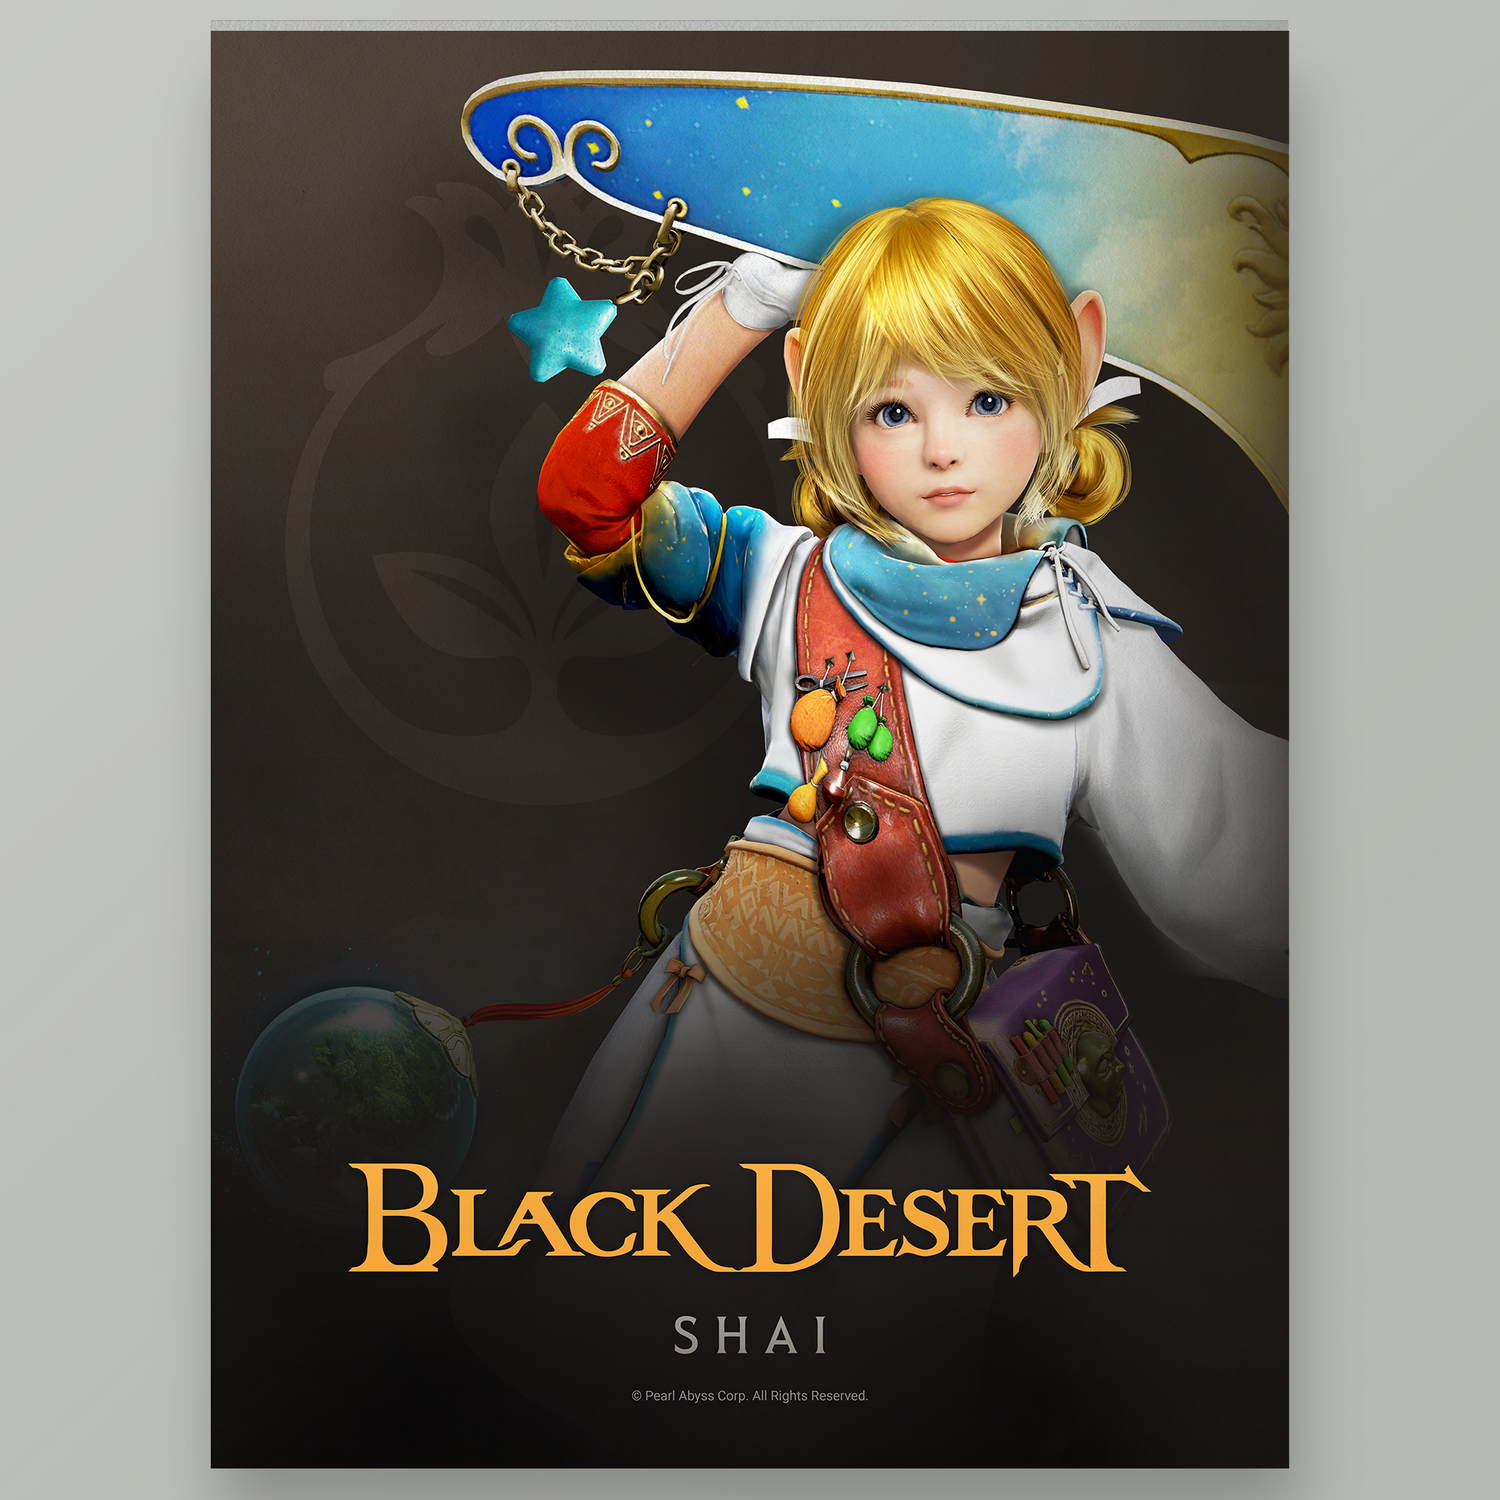 Black Desert Shai Poster